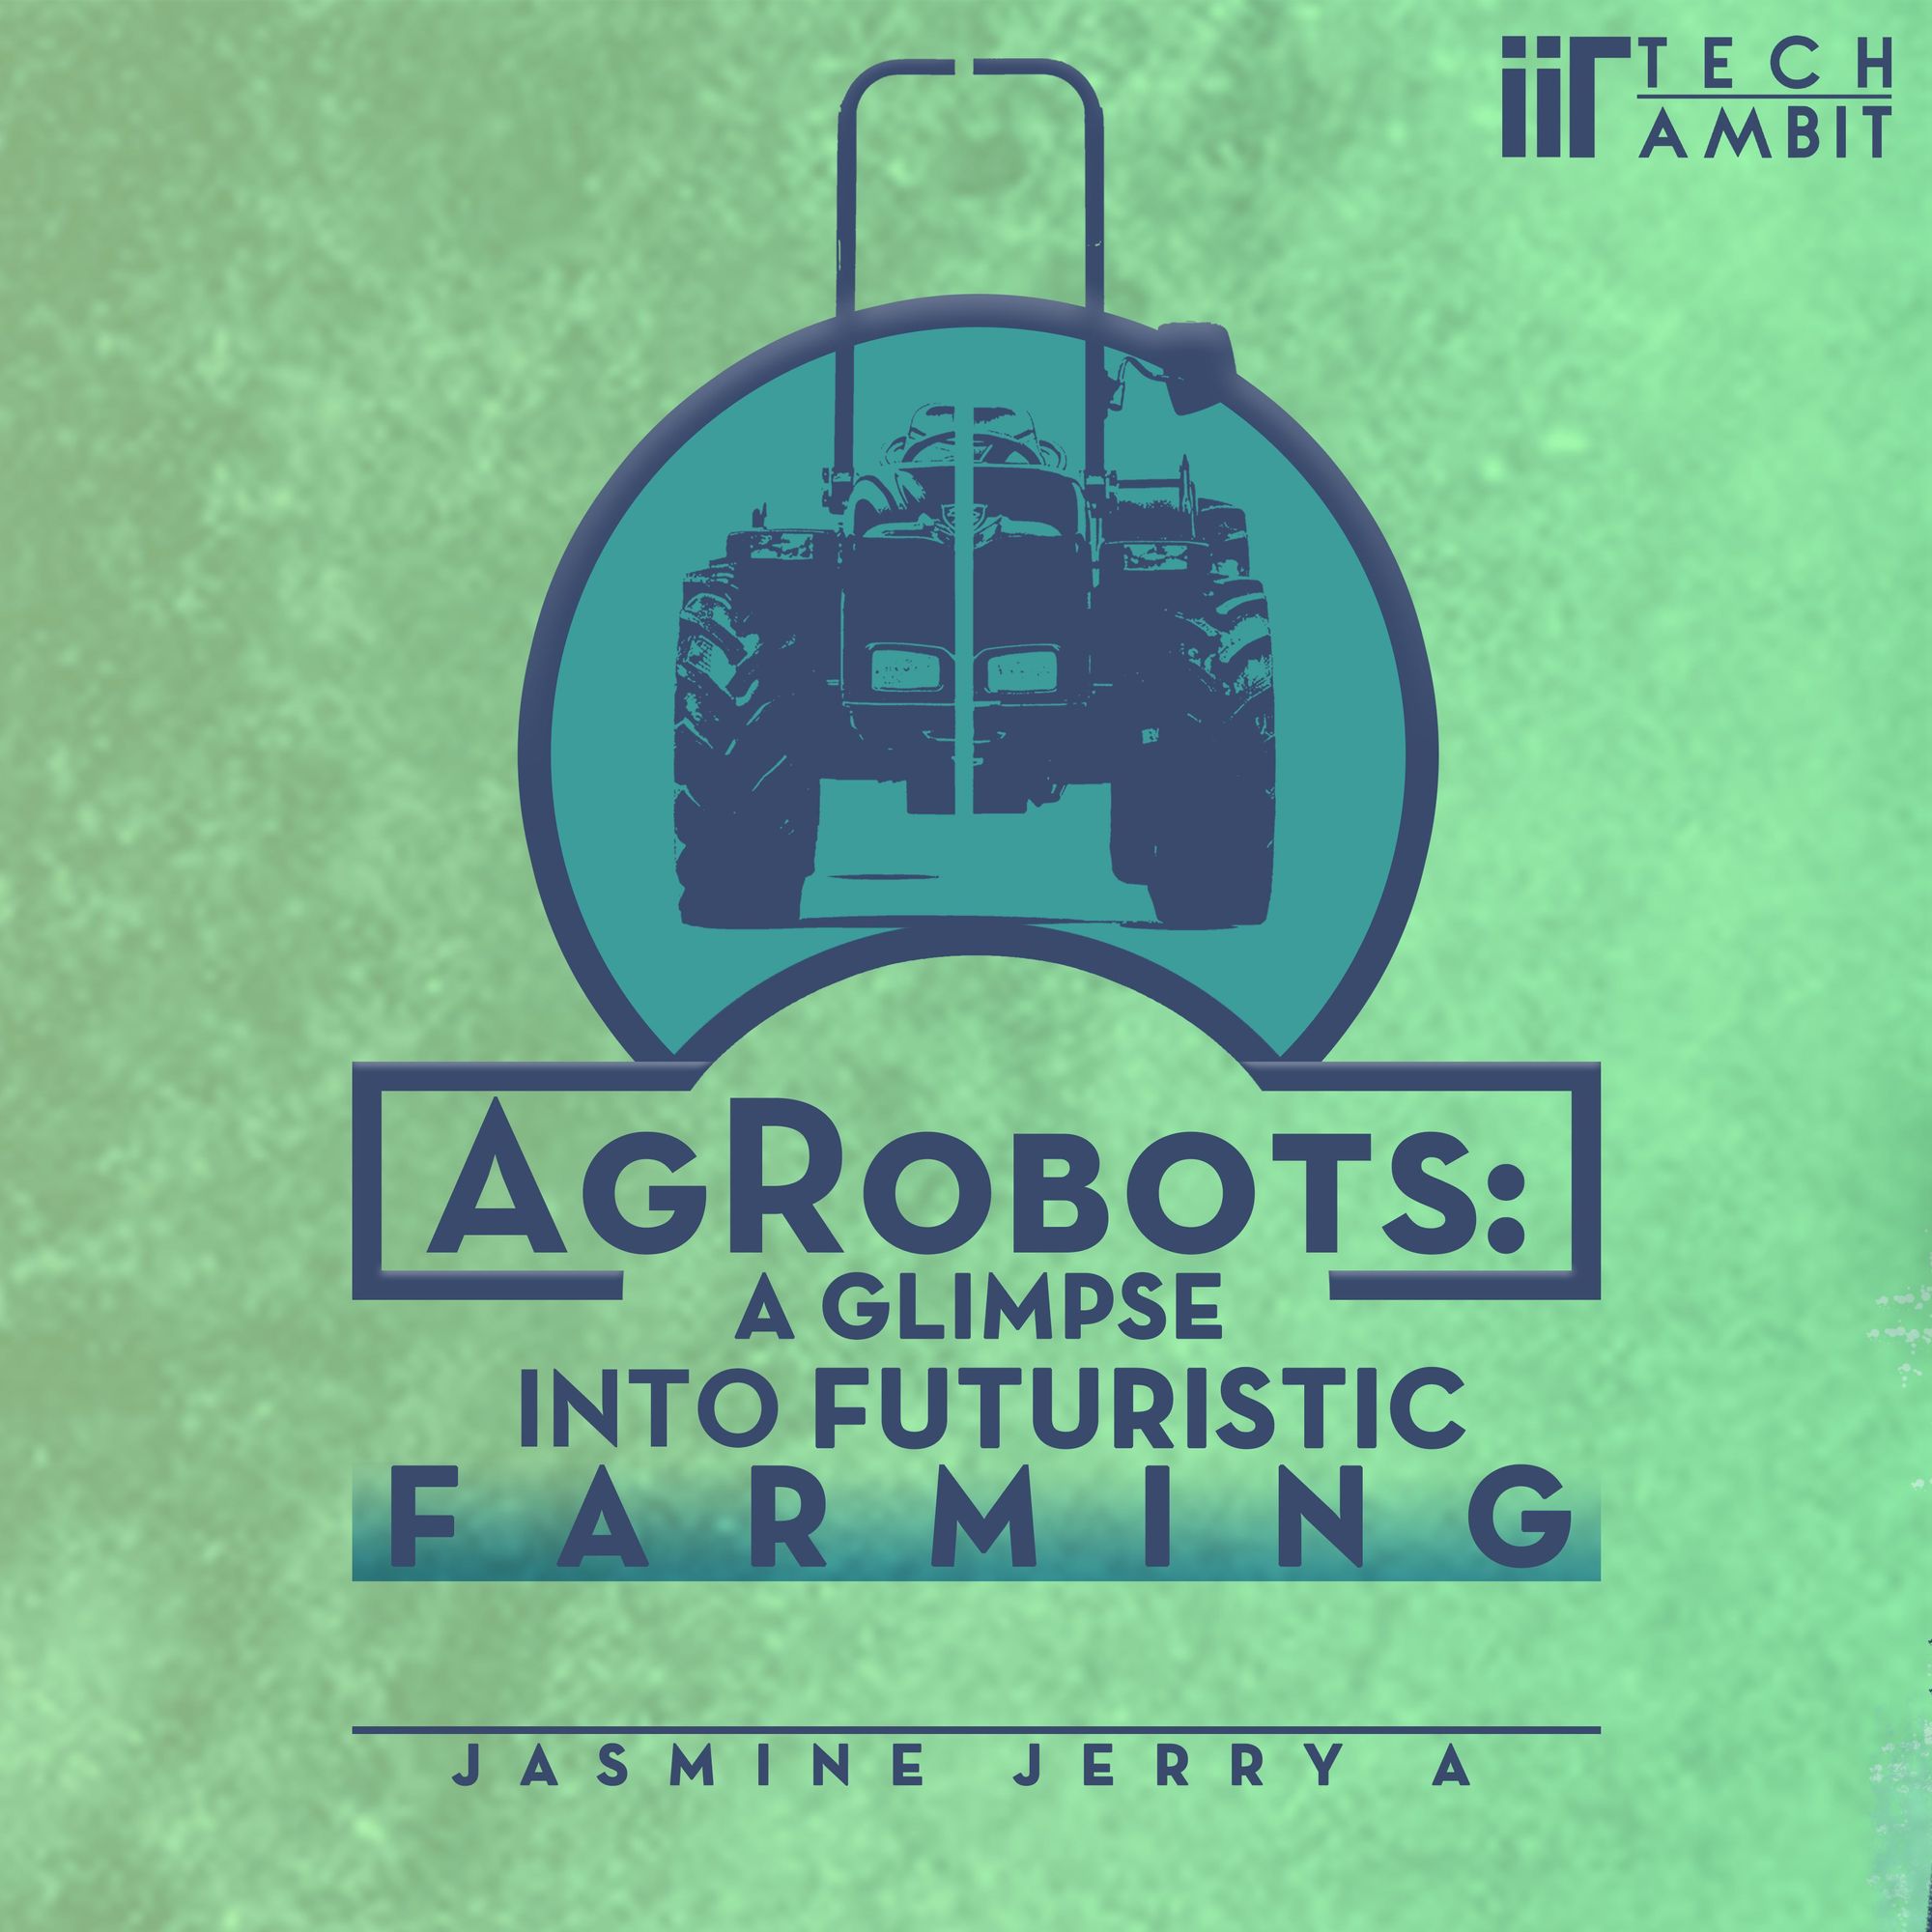 AgRobots: A glimpse into Futuristic Farming